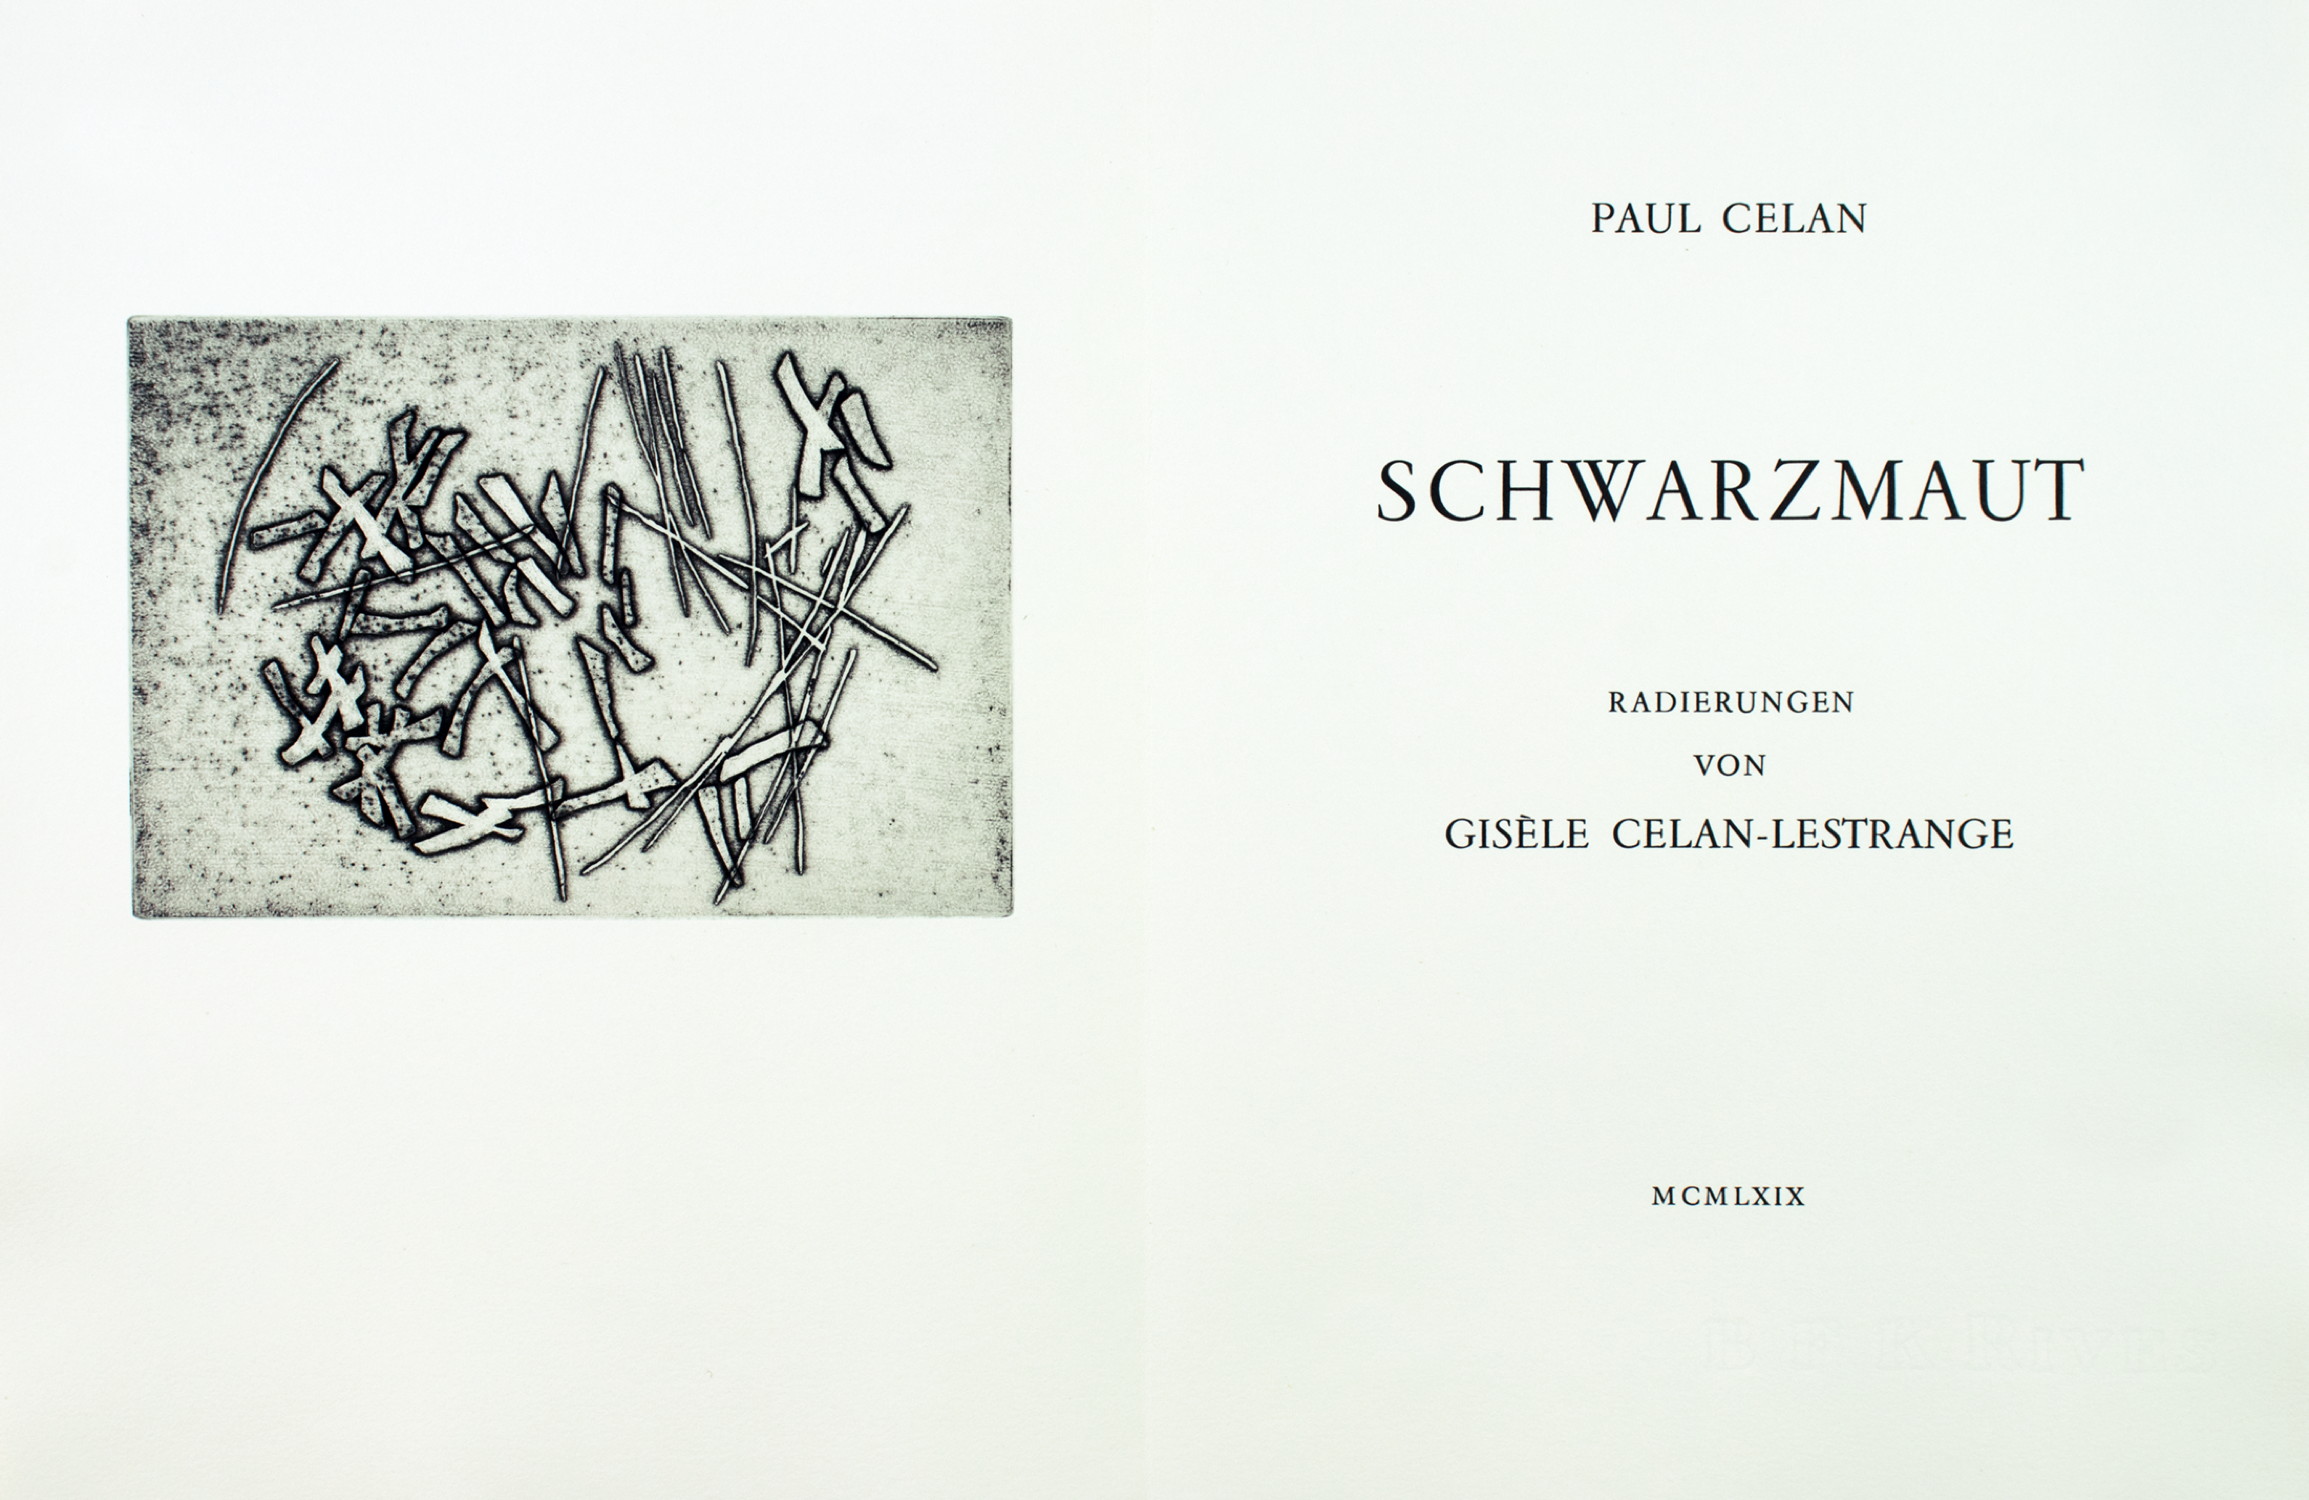 Paul Celan. Schwarzmaut. - Image 3 of 4